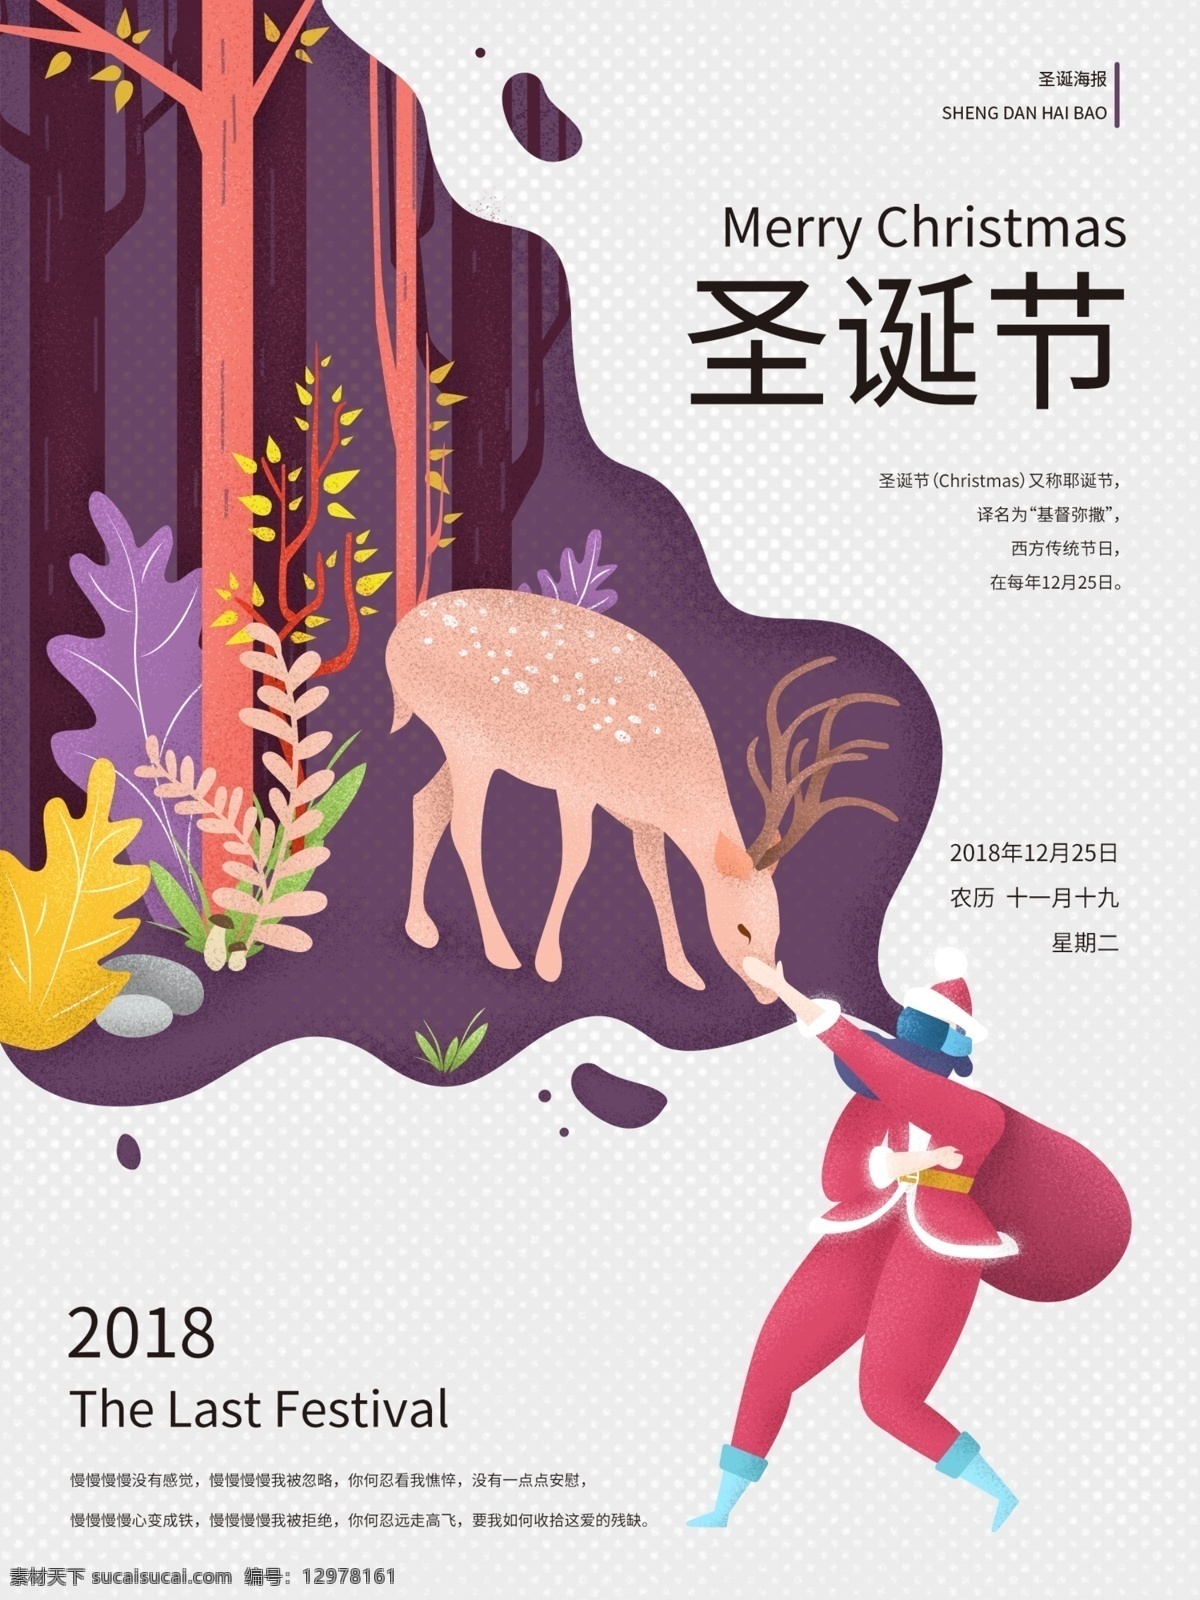 原创 圣诞节 梦幻 海报 红色 紫色 花草 石头 vr眼镜 虚拟 触摸 麋鹿 深林 树木 2018